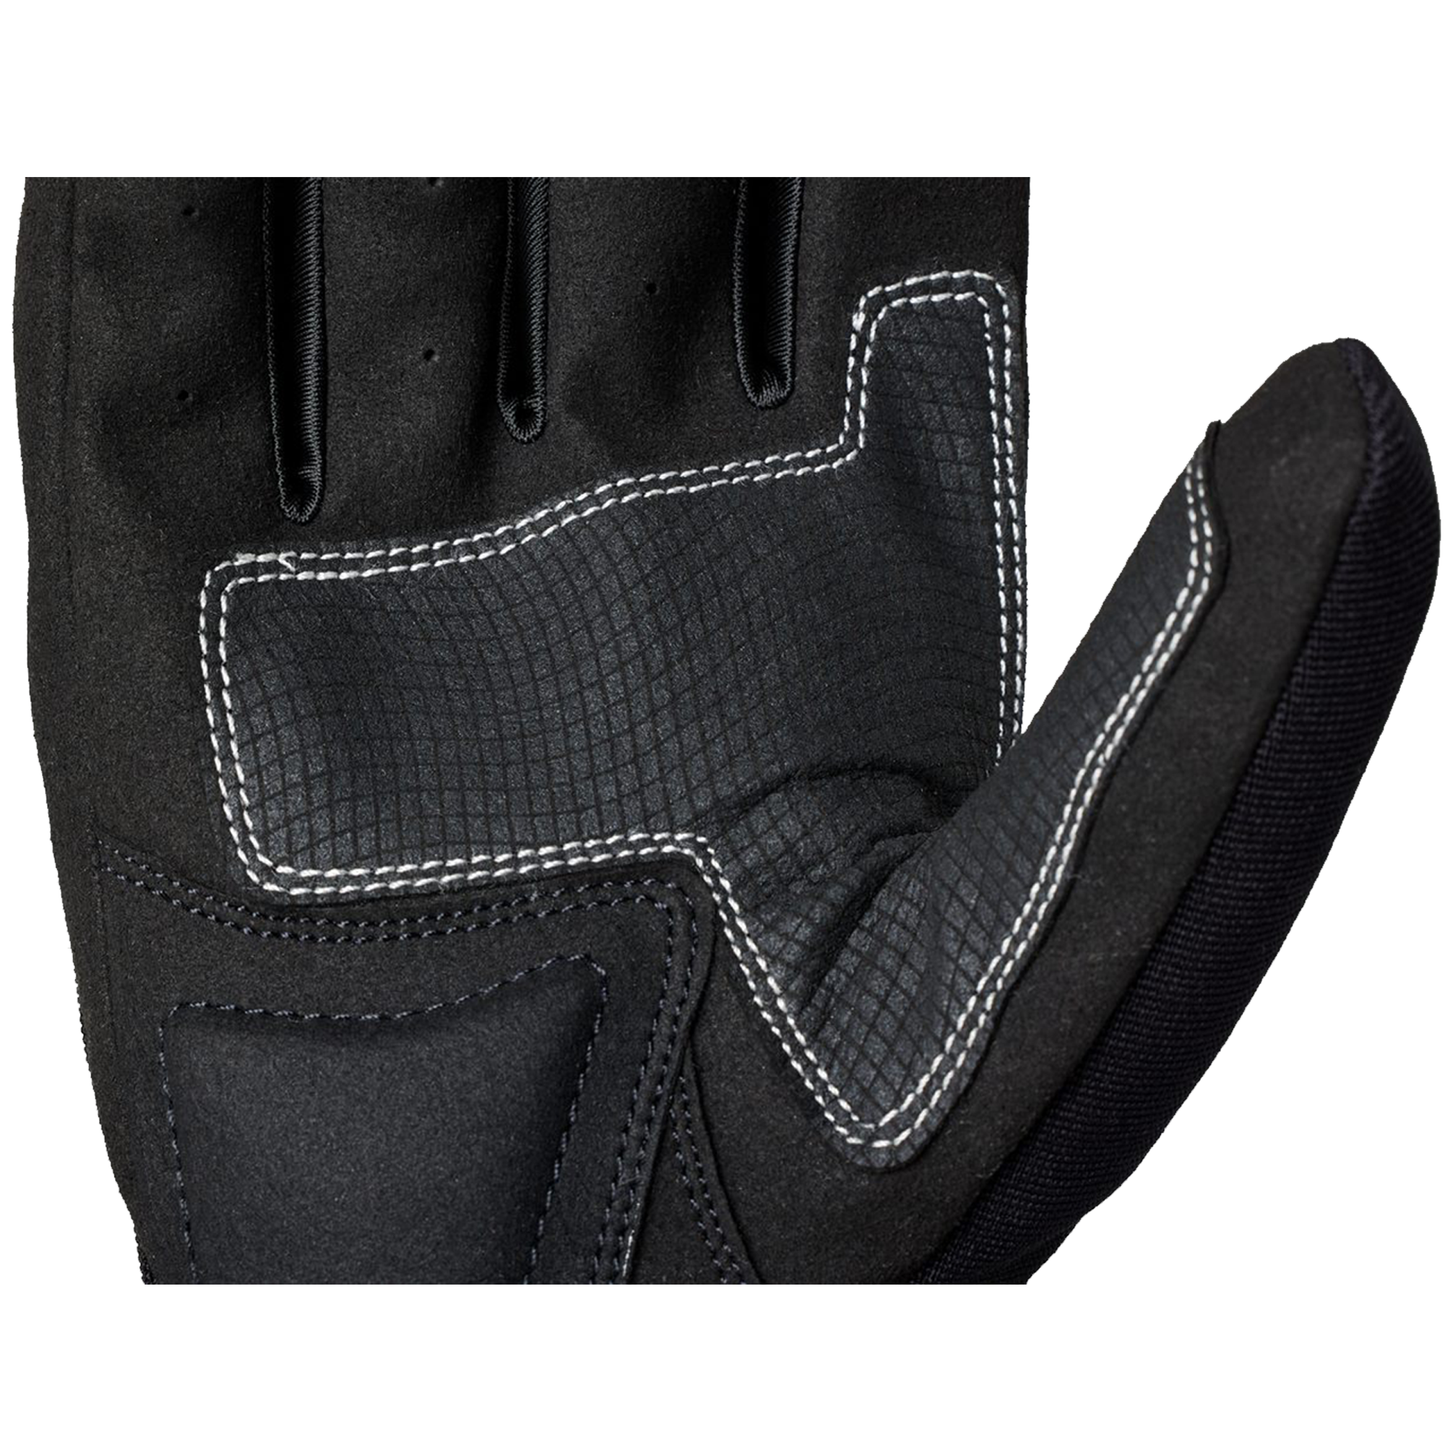 RST IOM TT Team Evo (CE) Men's Gloves - Black/White